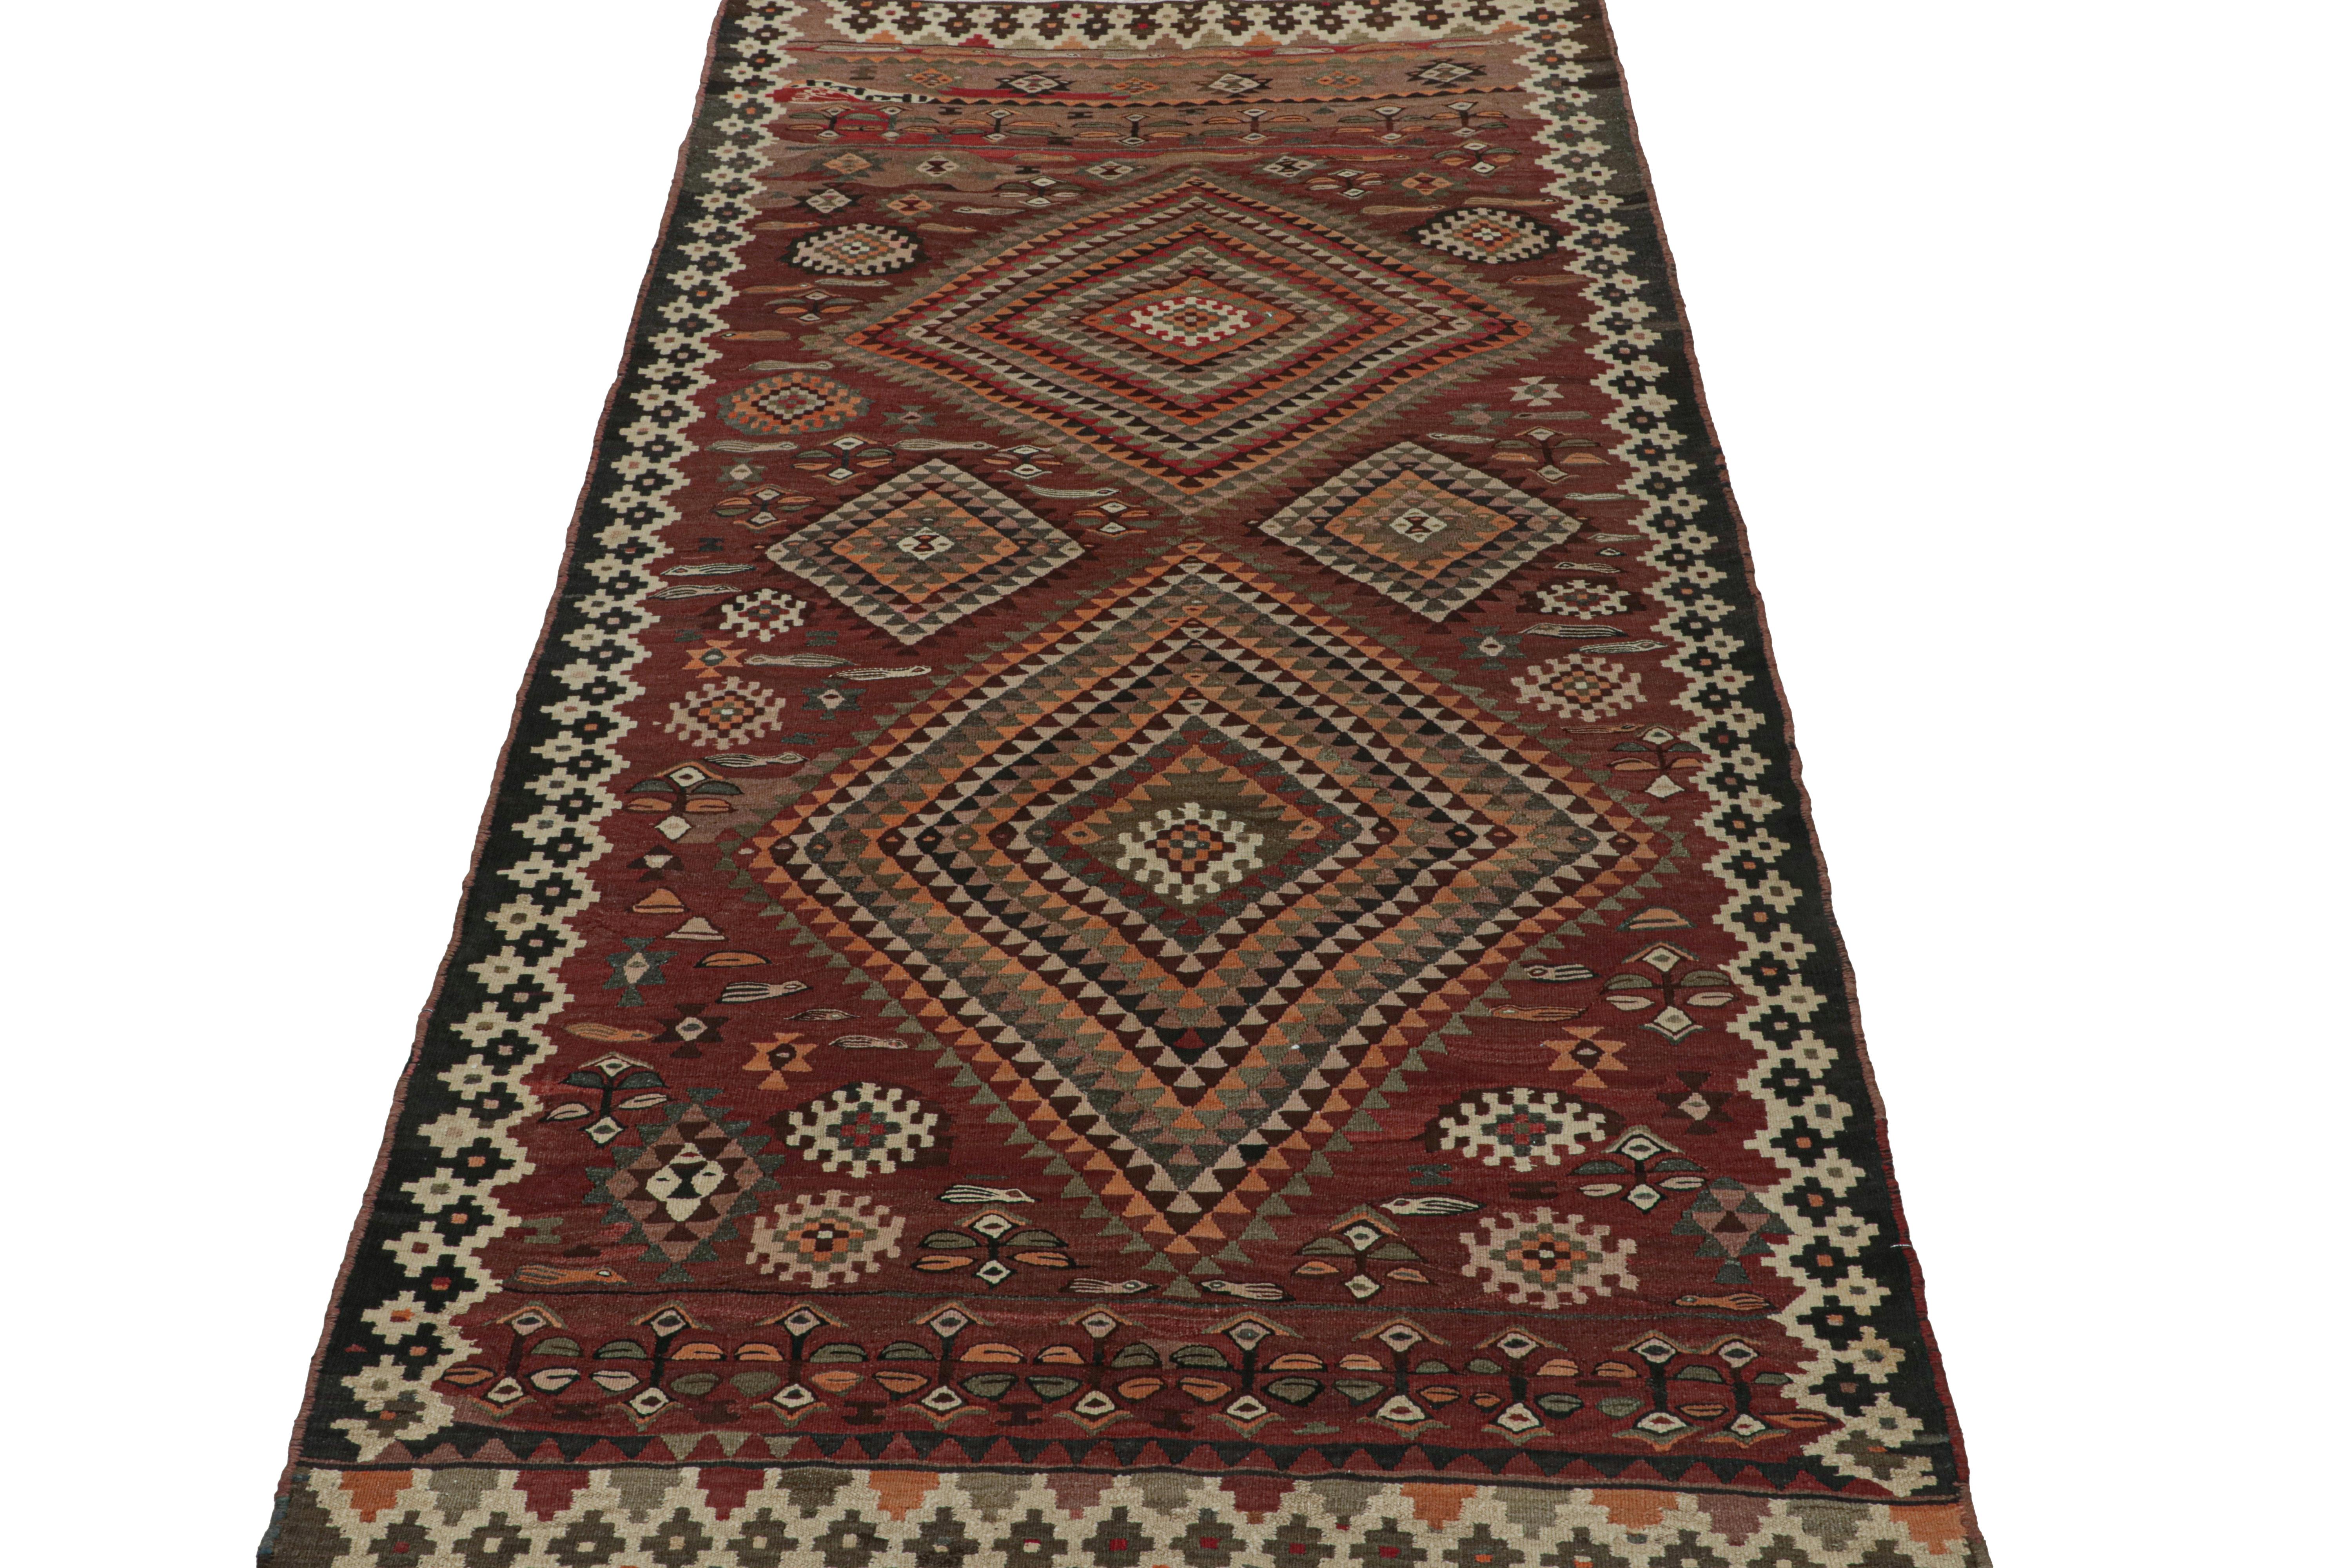 Ce Rug & Kilim persan vintage de 5x10 est un tapis tribal Shahsavan, tissé à la main en laine vers 1950-1960. 

Le dessin joue sur les styles de médaillon et de motif all-over, et bénéficie de couleurs riches et vibrantes dans des motifs